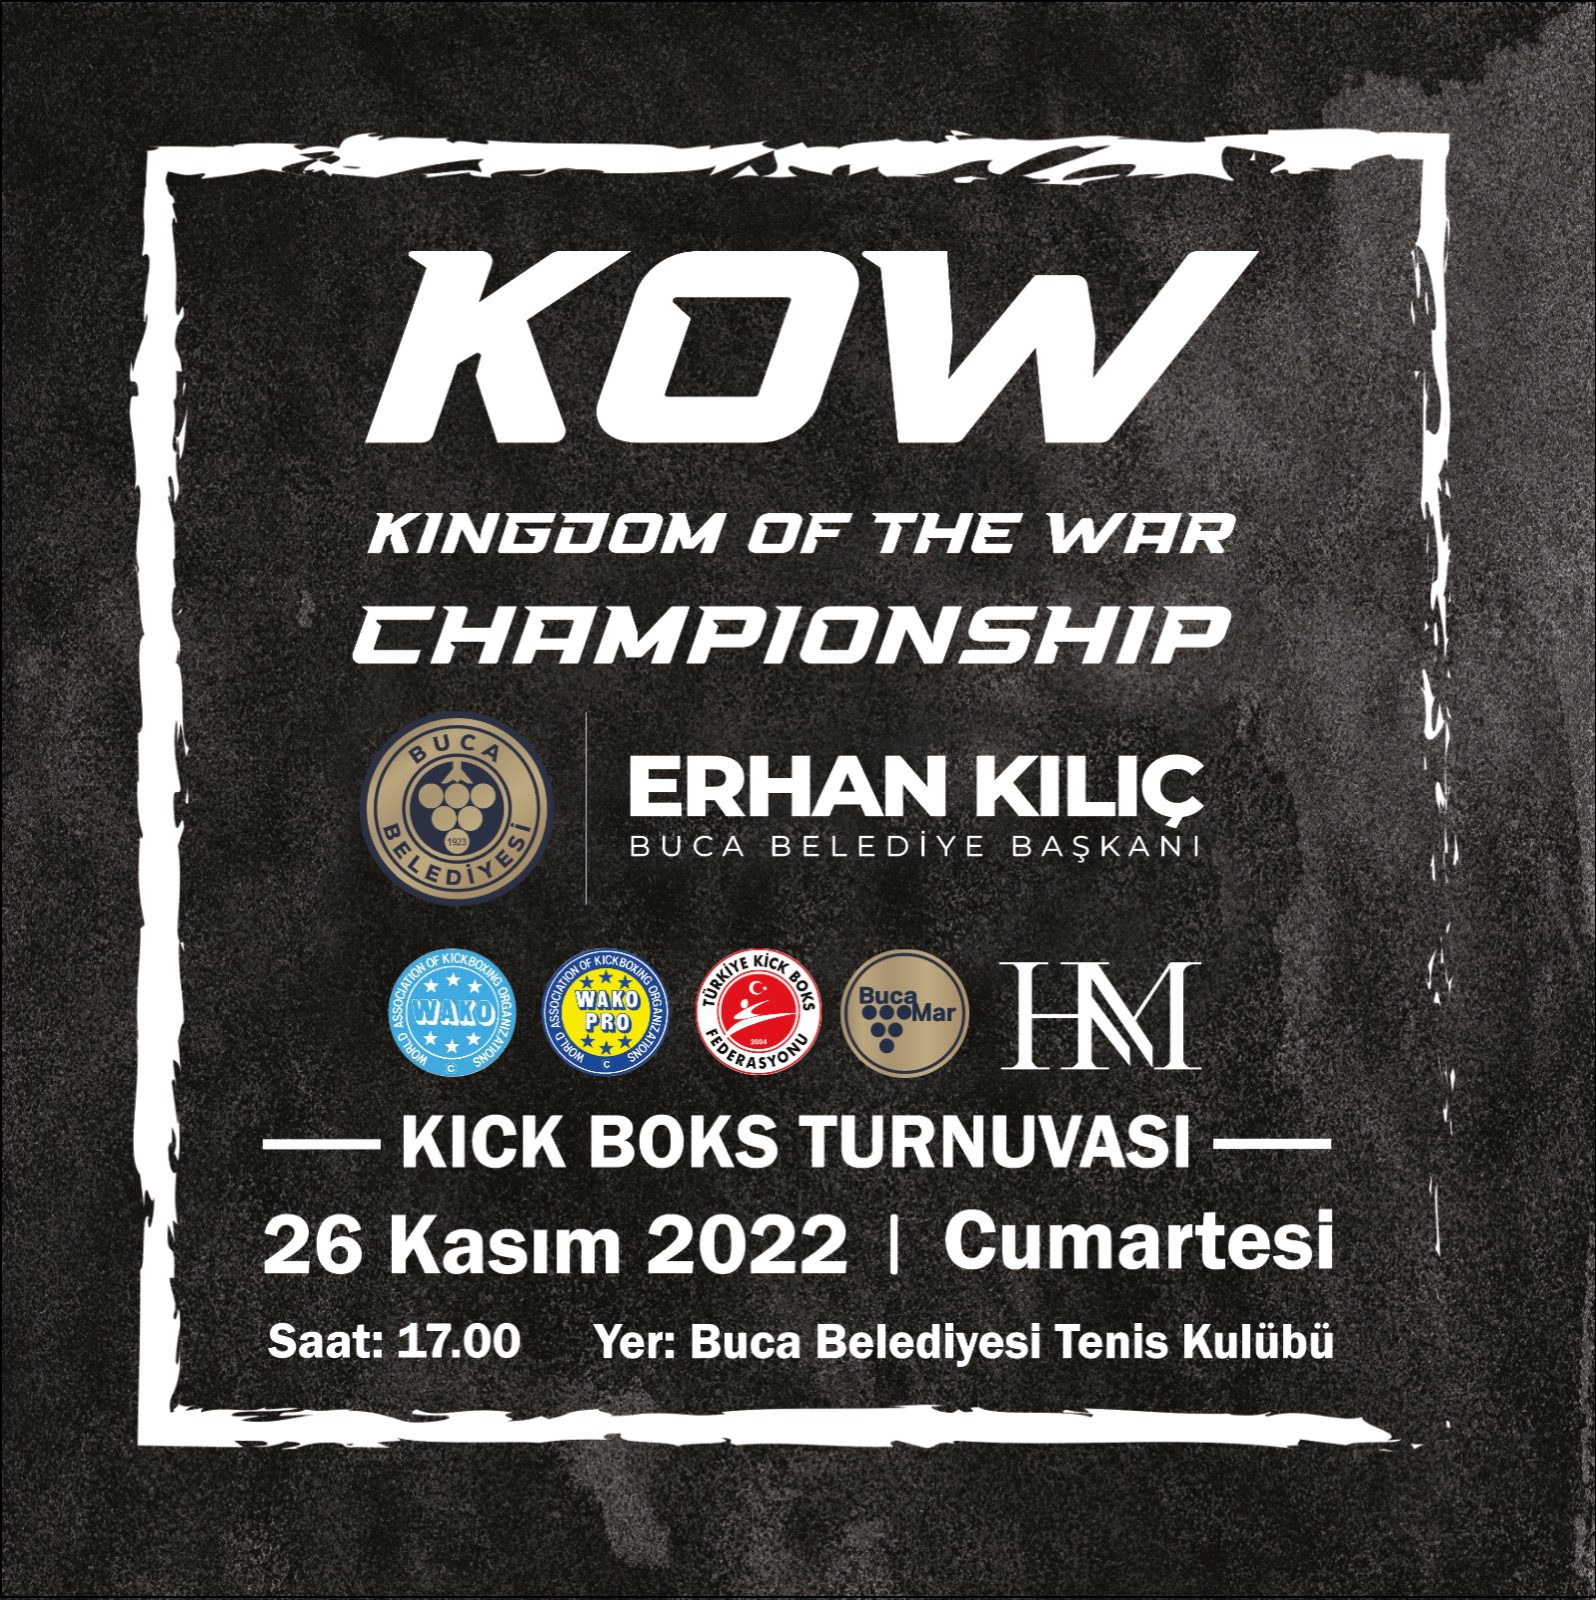 şampiyon Buca Belediyesi önderliğinde gerçekleştirilecek olan uluslararası dövüş arenası KOW KINGDOM OF THE WAR CHAMPİONSHİP kick boks turnuvası 26 Kasım Cumartesi günü İzmirlilerle buluşacak.